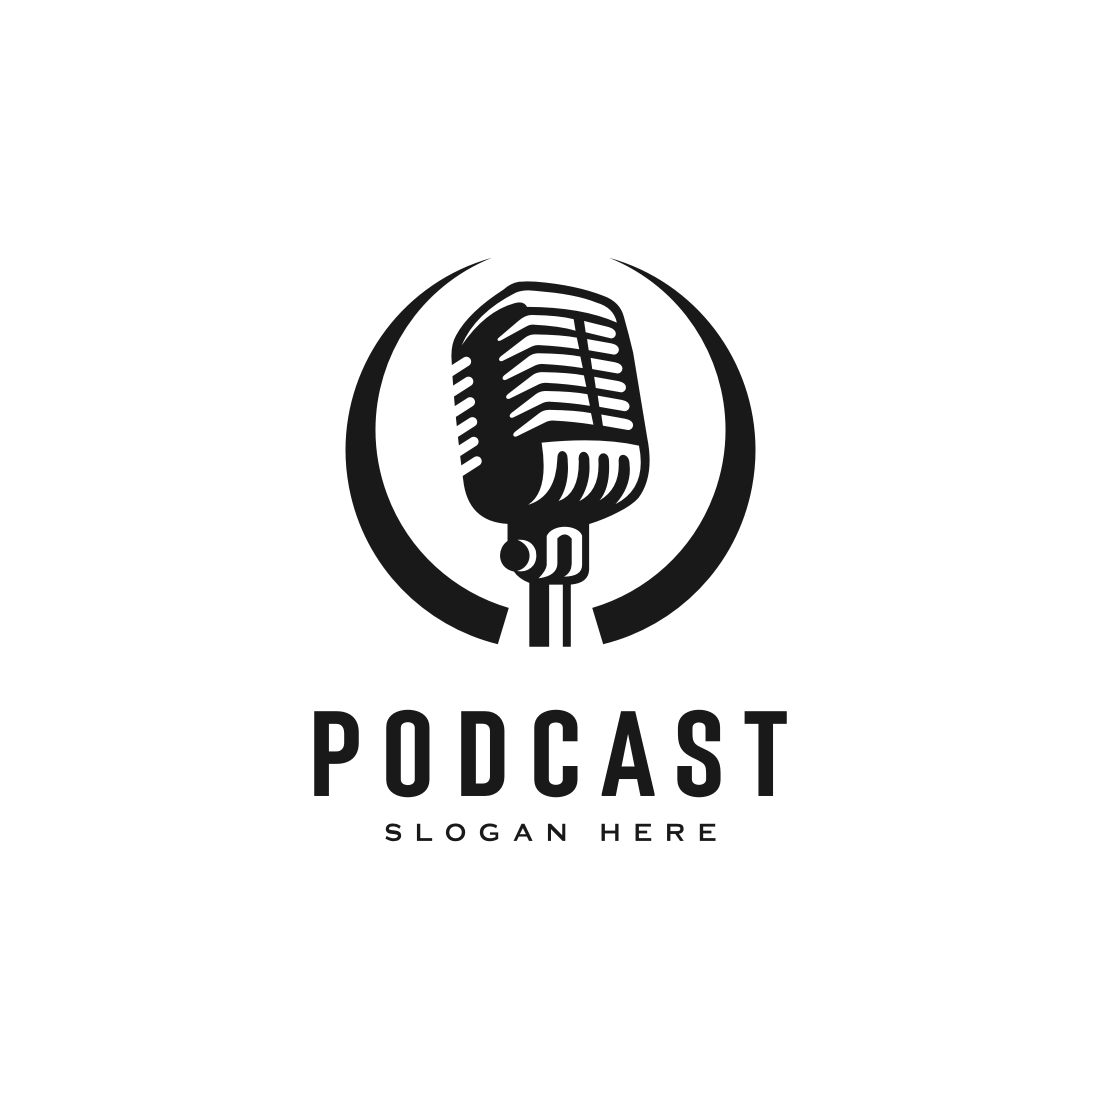 Spotify-podcast-logo-finance2 - UW Autism